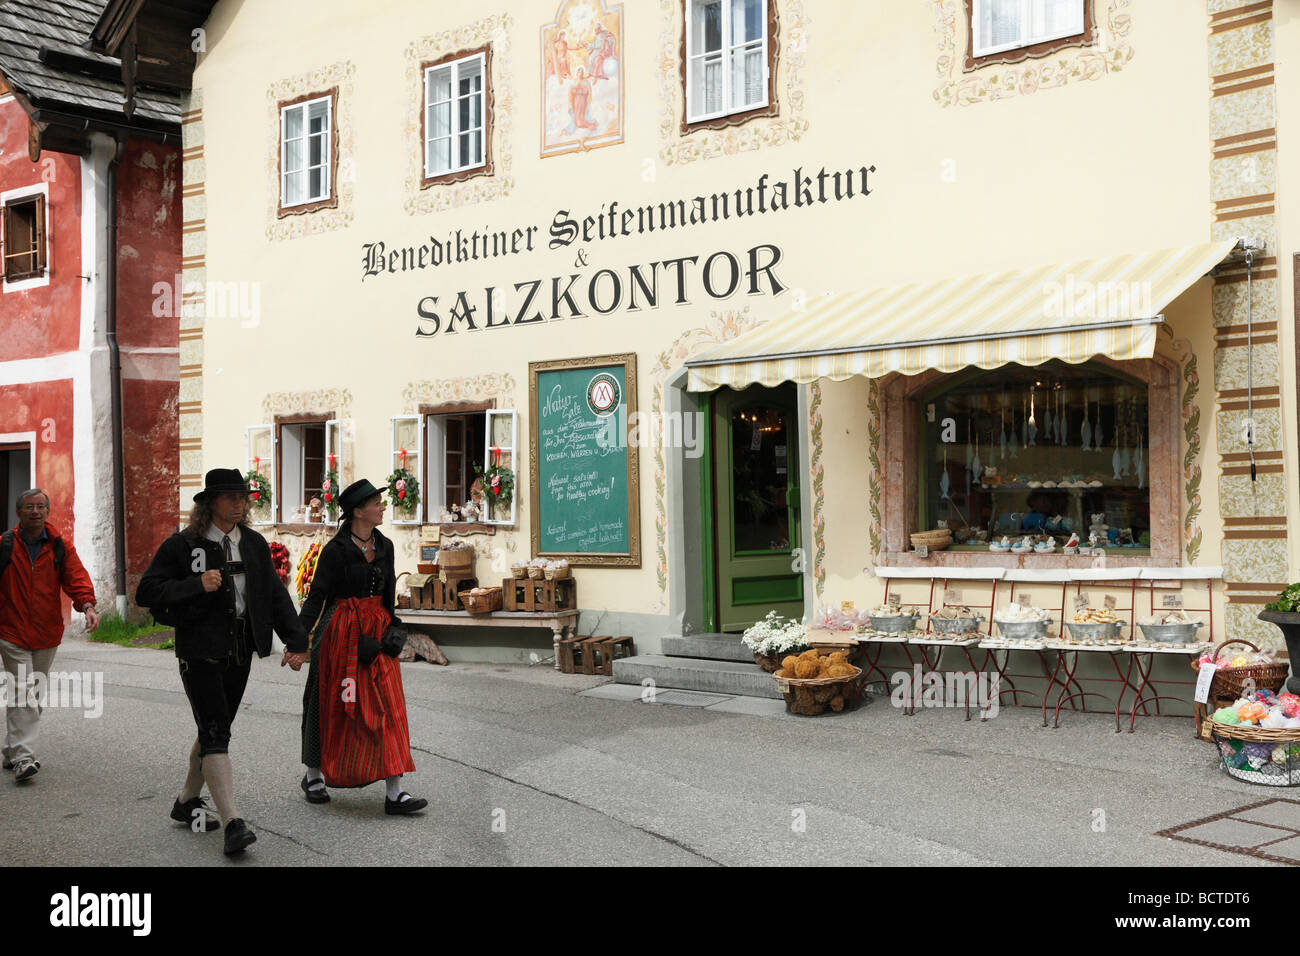 Abbazia benedettina fabbrica di sapone e sale shop, Hallstatt, regione del Salzkammergut, Austria superiore, Austria, Europa Foto Stock